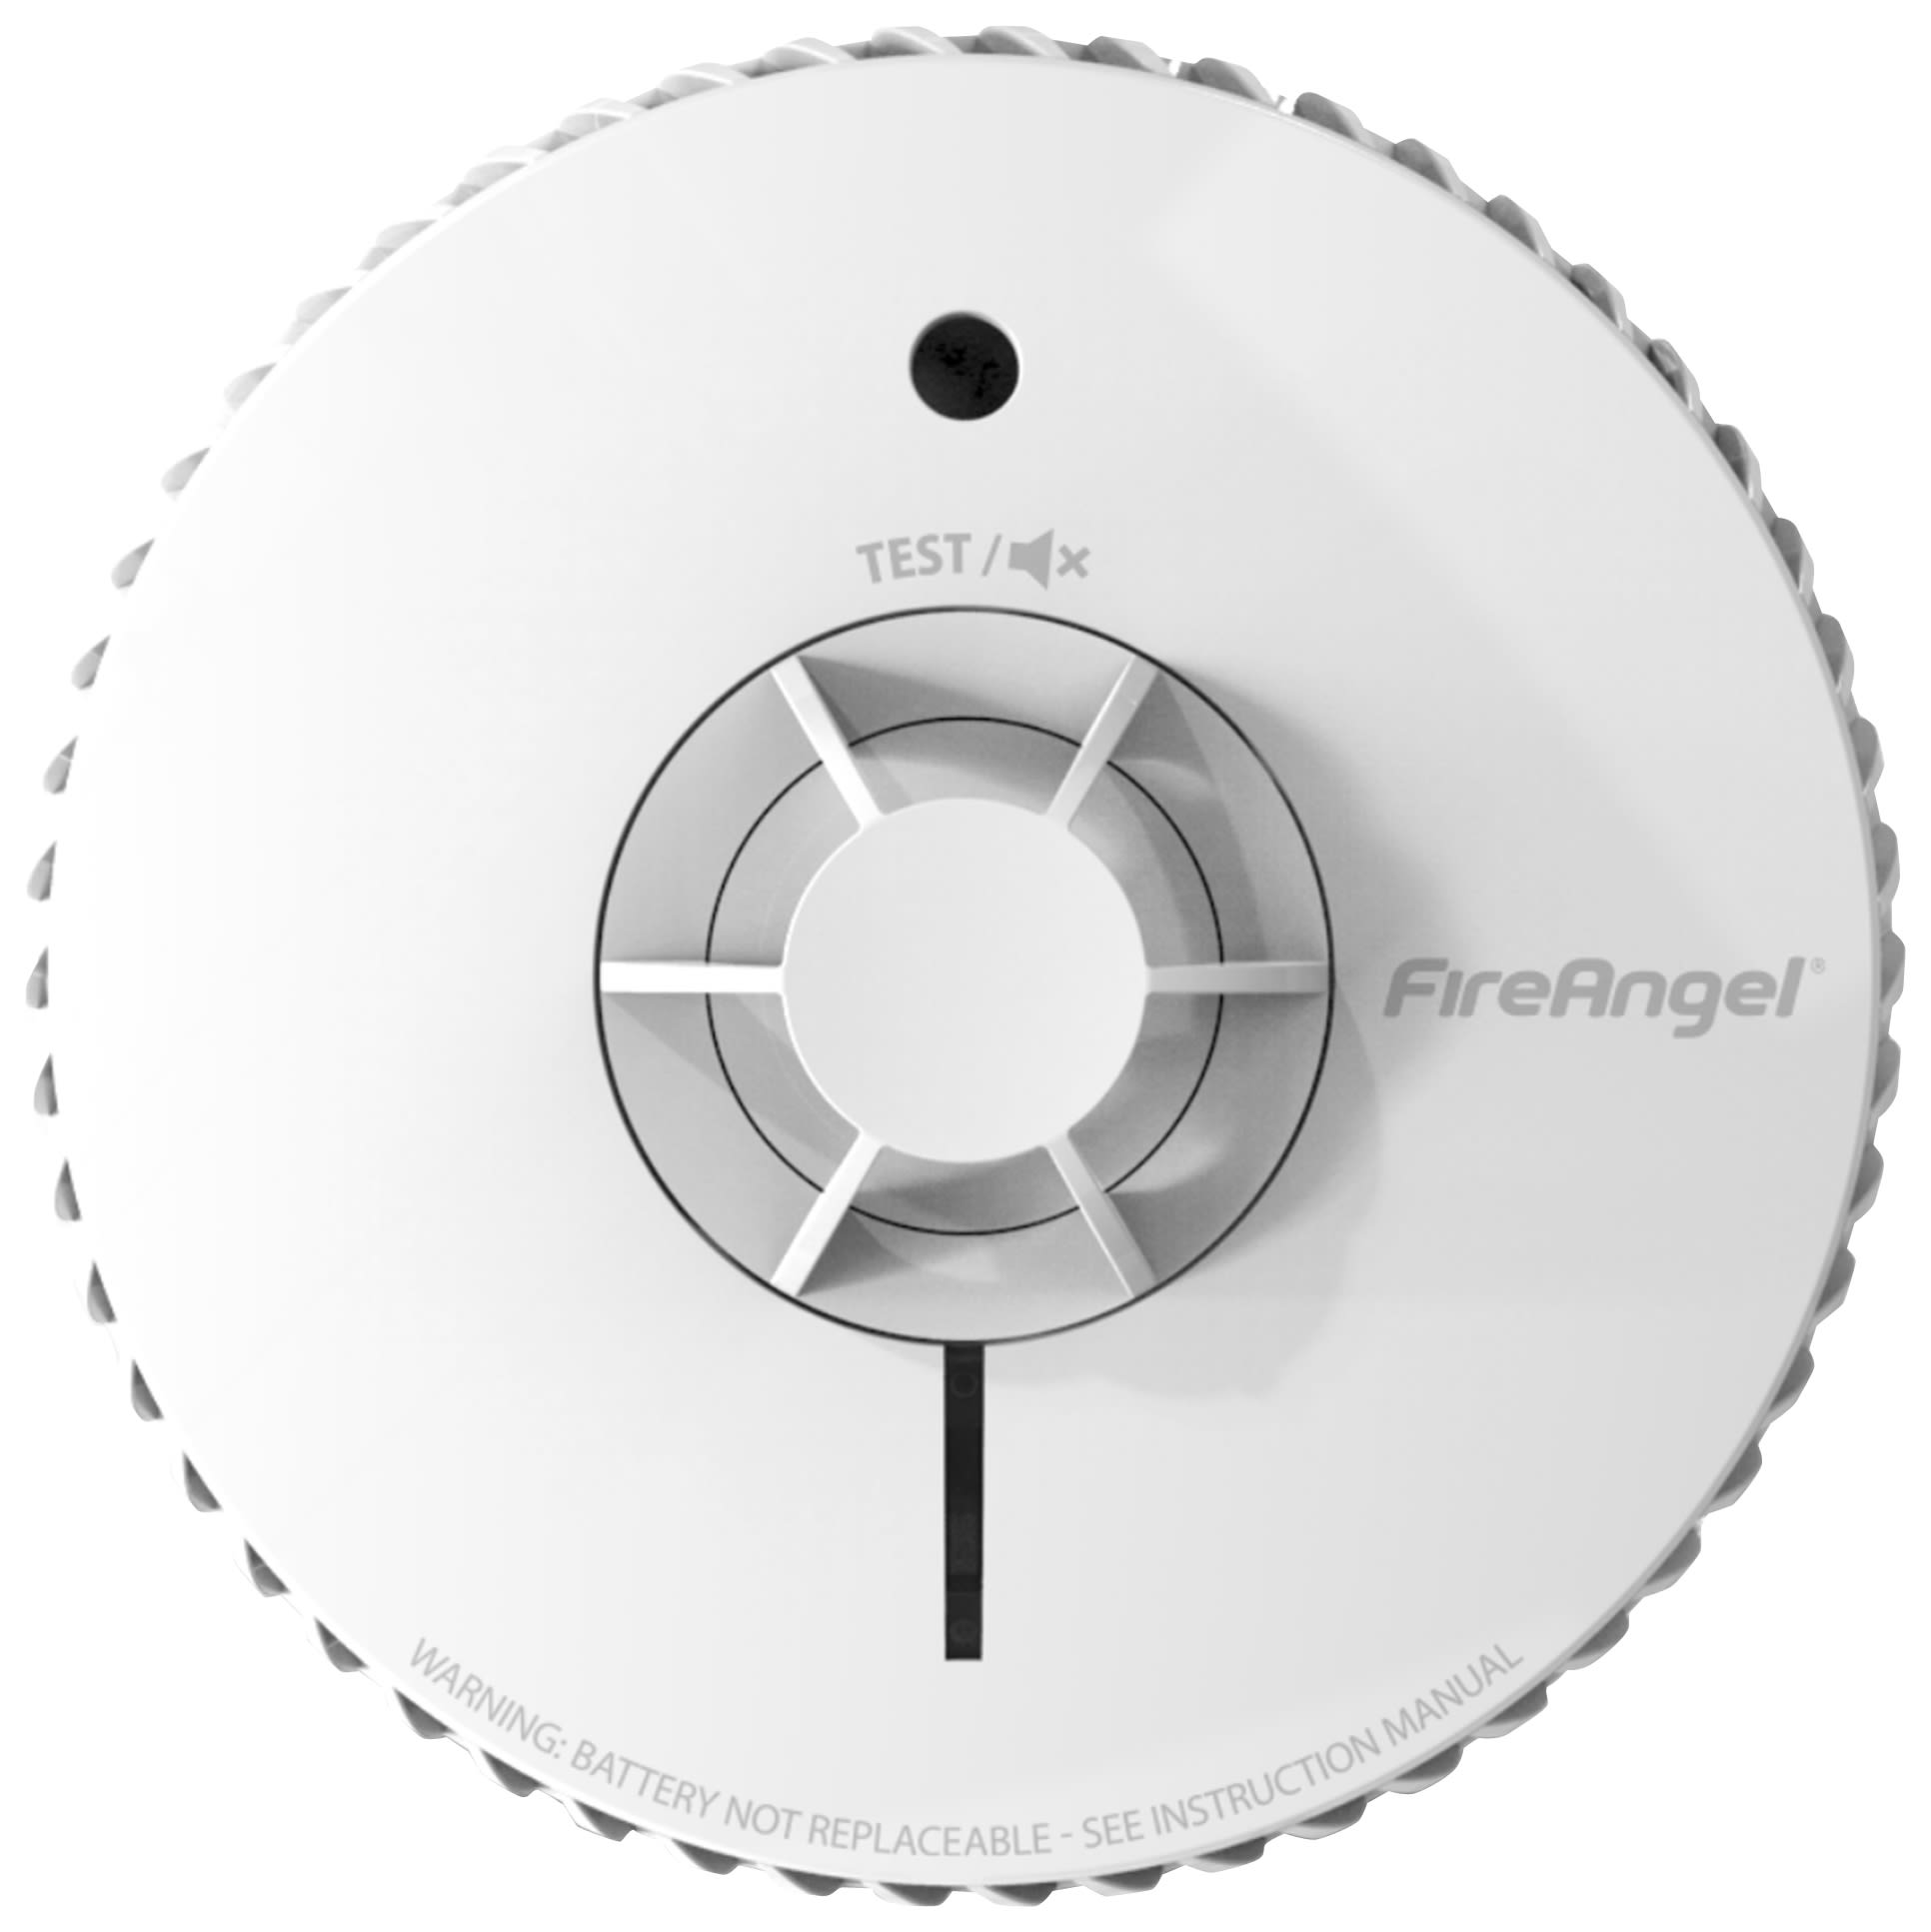 FireAngel FA6720-R Heat Alarm with 10 Year Sealed